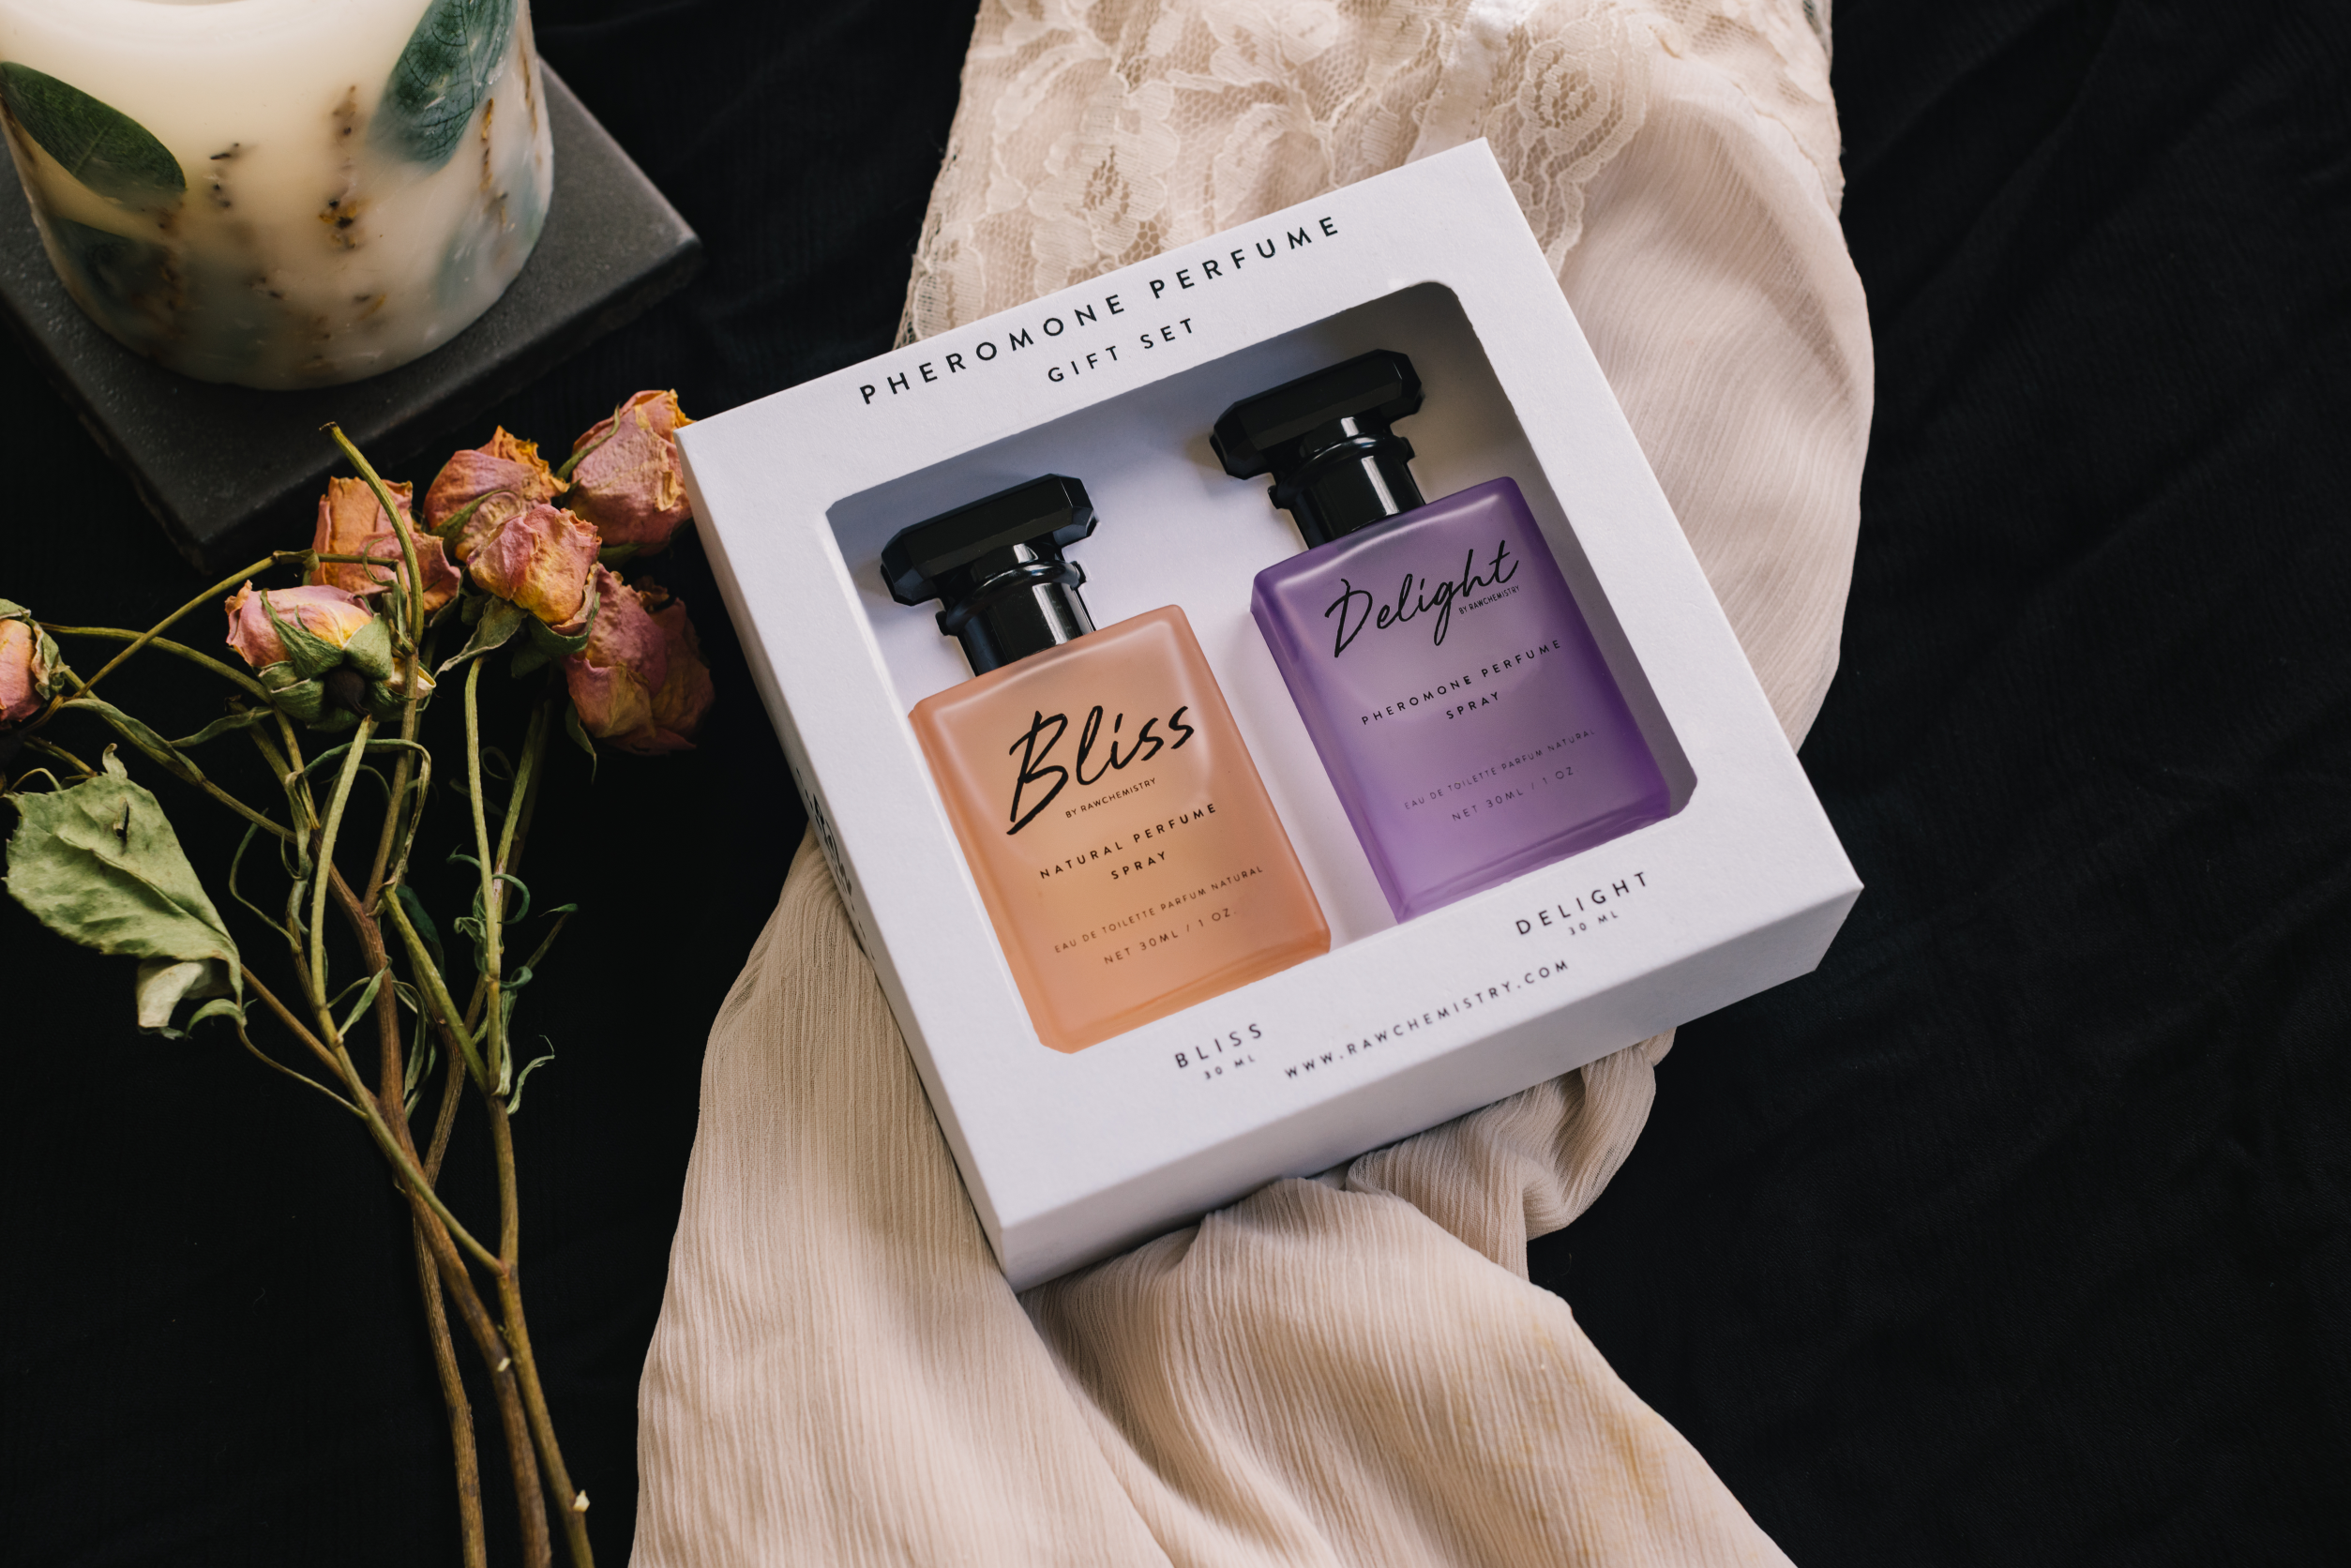 Bliss & Delight Pheromone Perfume Gift Set